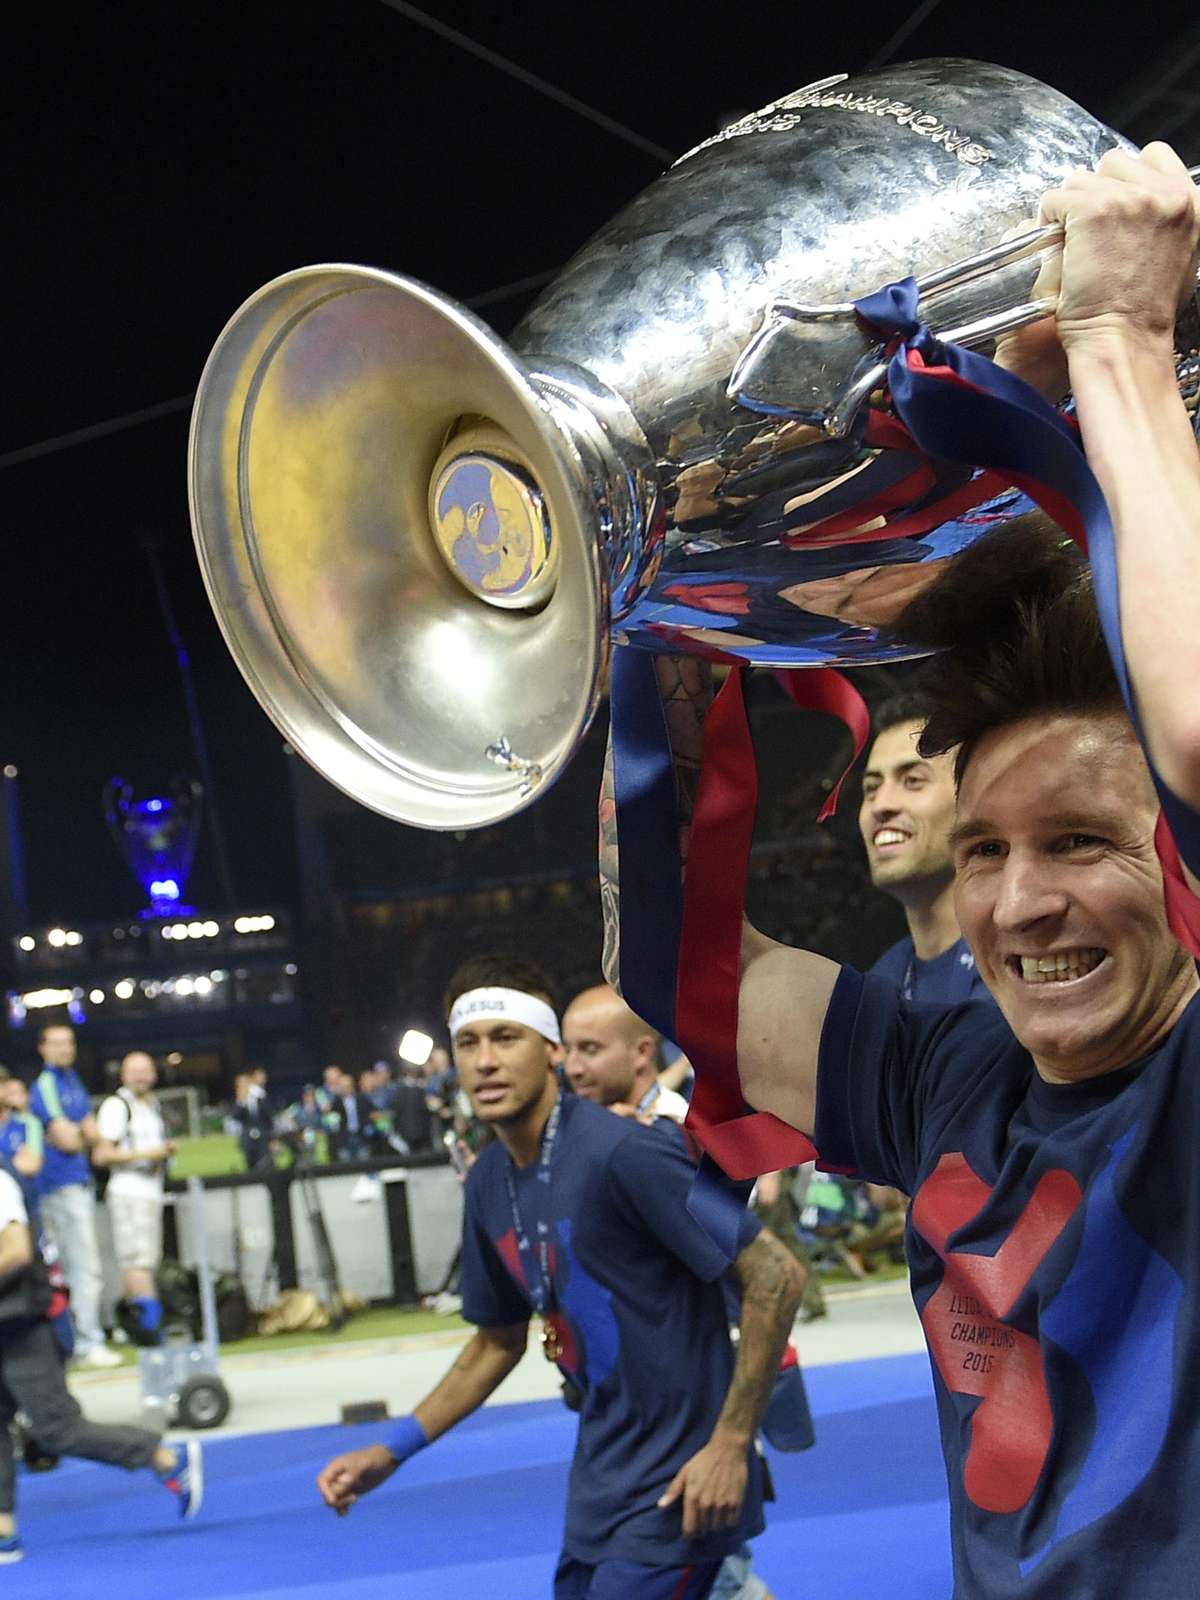 Os vencedores e perdedores da Champions League: Messi faz história